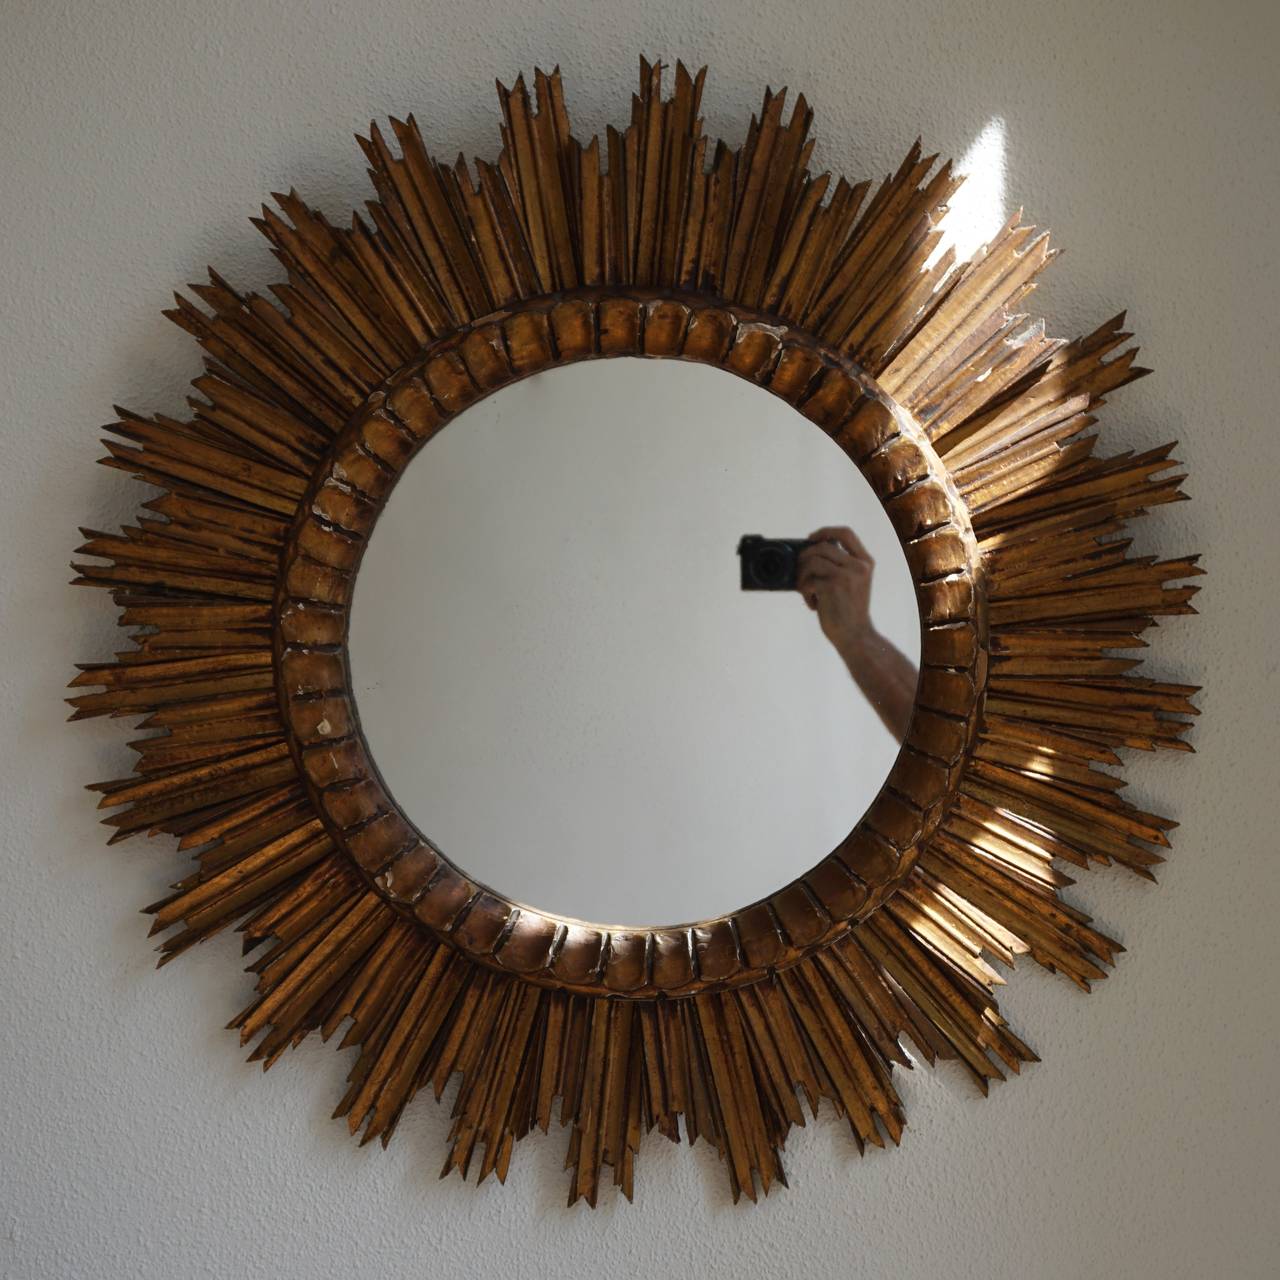 Miroir mural italien en bois doré avec miroir intérieur convexe.
Diamètre 73 cm.